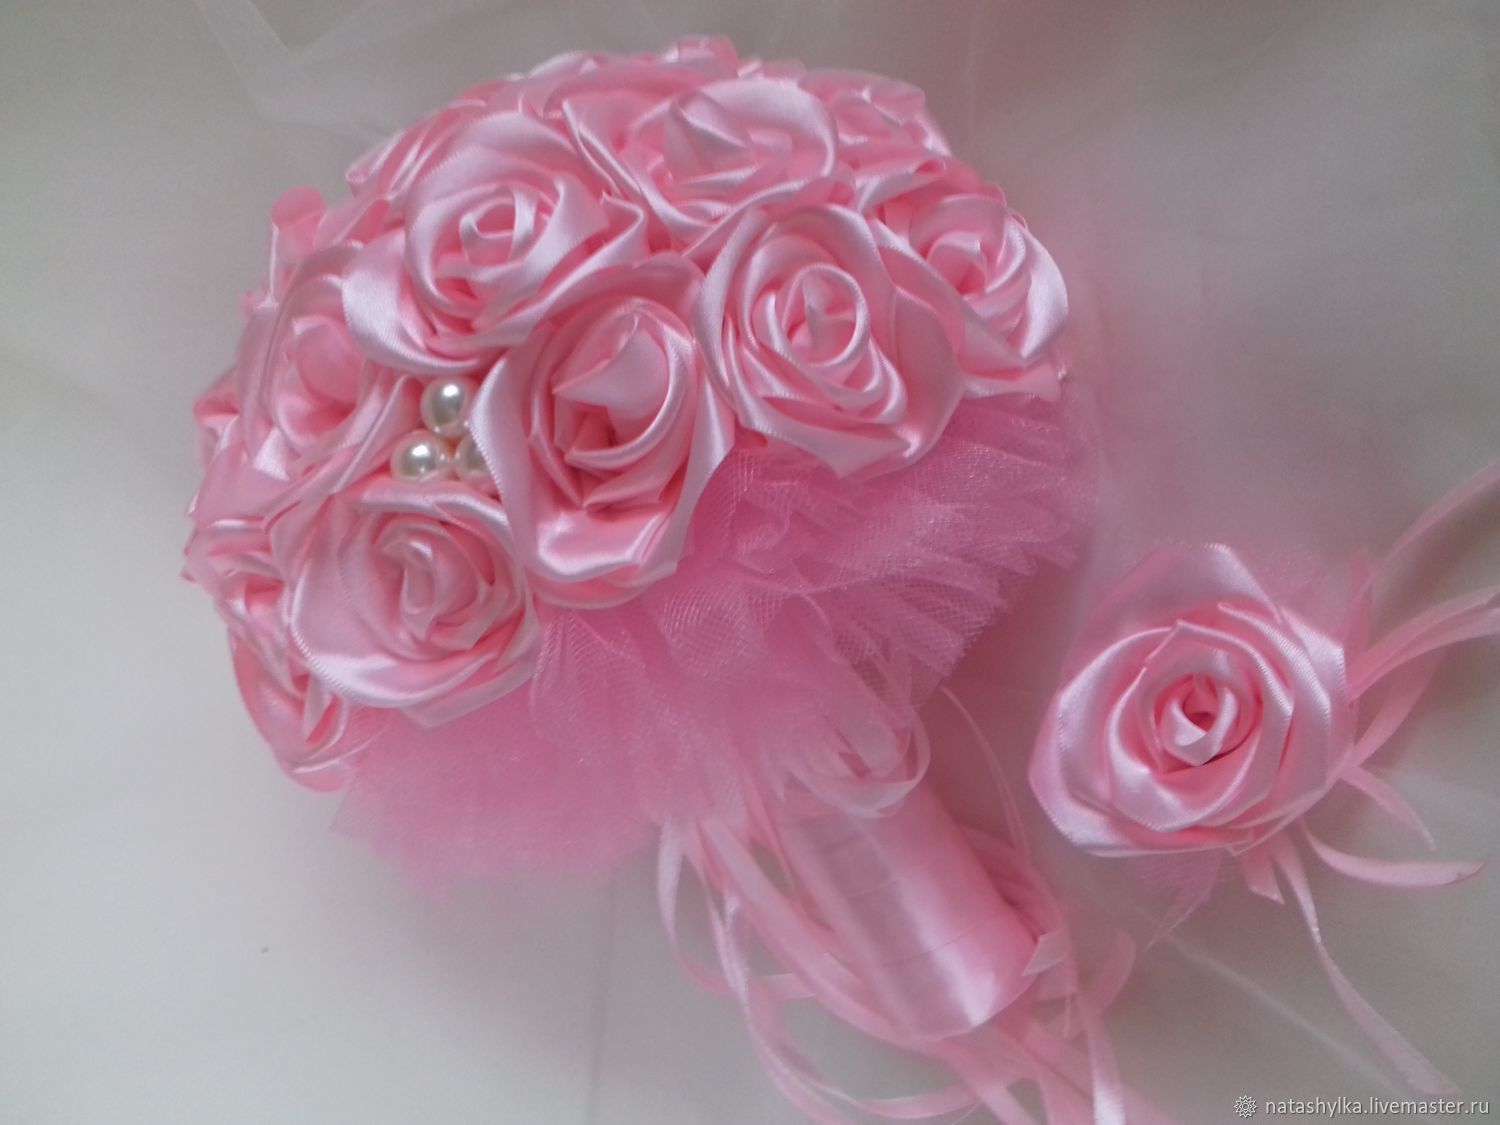 Свадебный букет из роз перевязанный атласной лентой